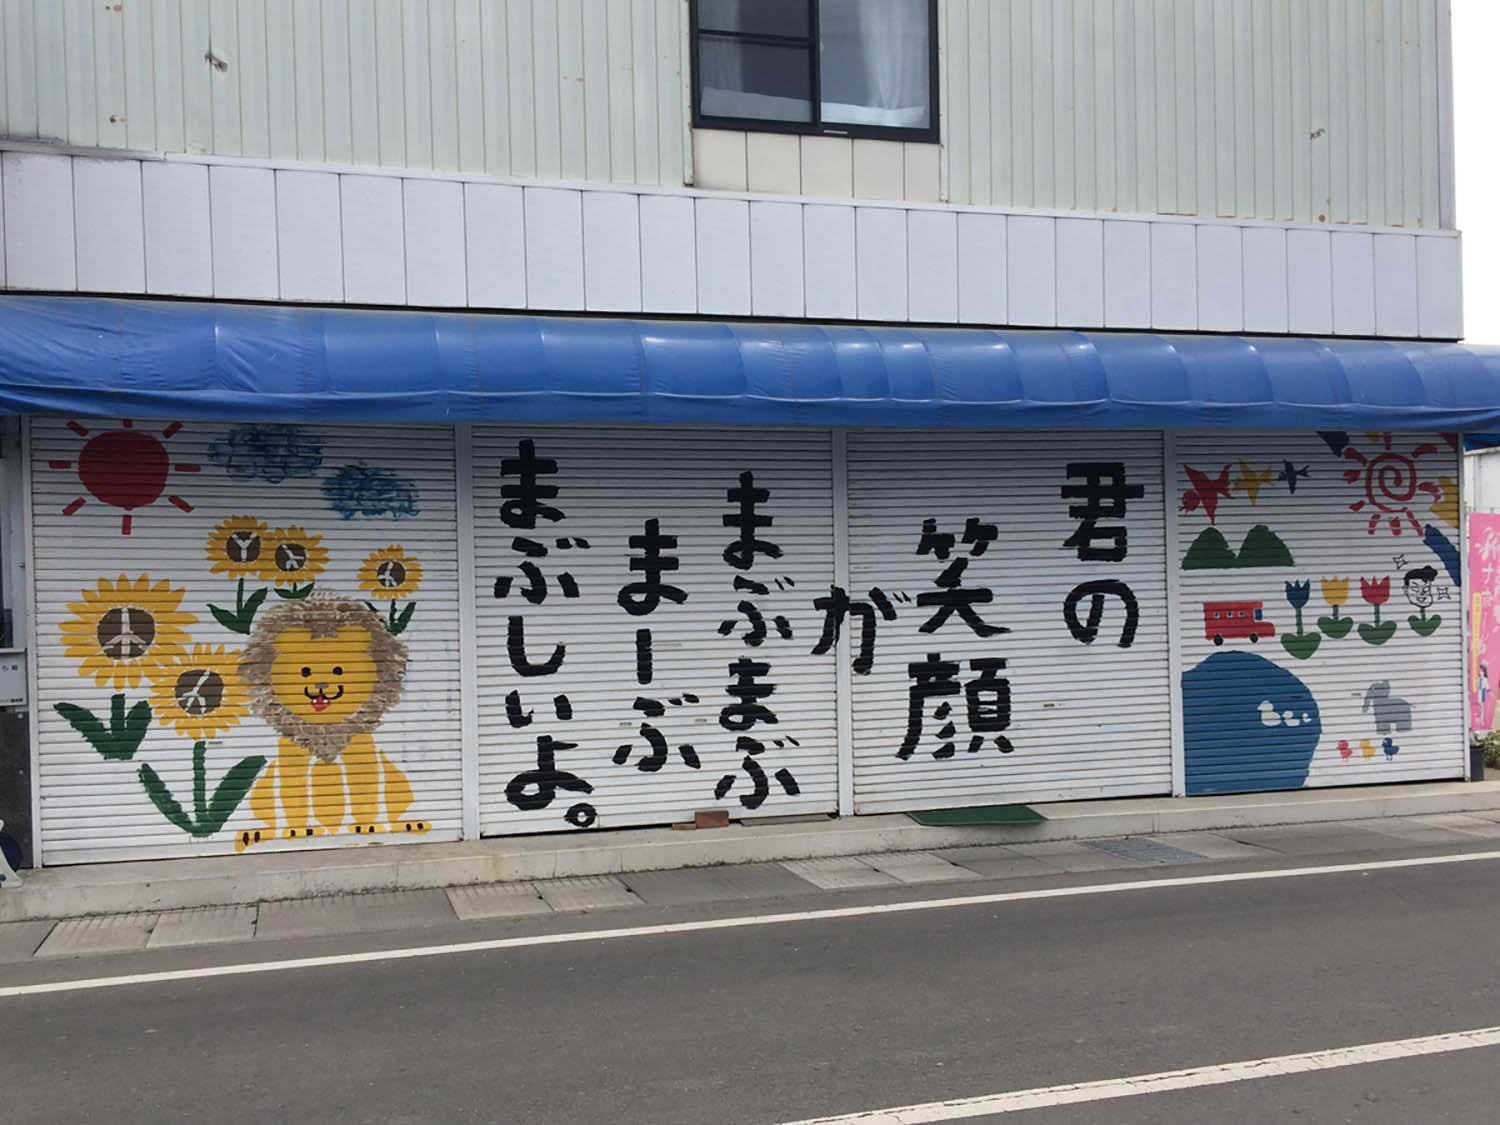 力強さを感じる、益子駅前の電器店のシャッター。小学生が描いたかどうかは定かではない。